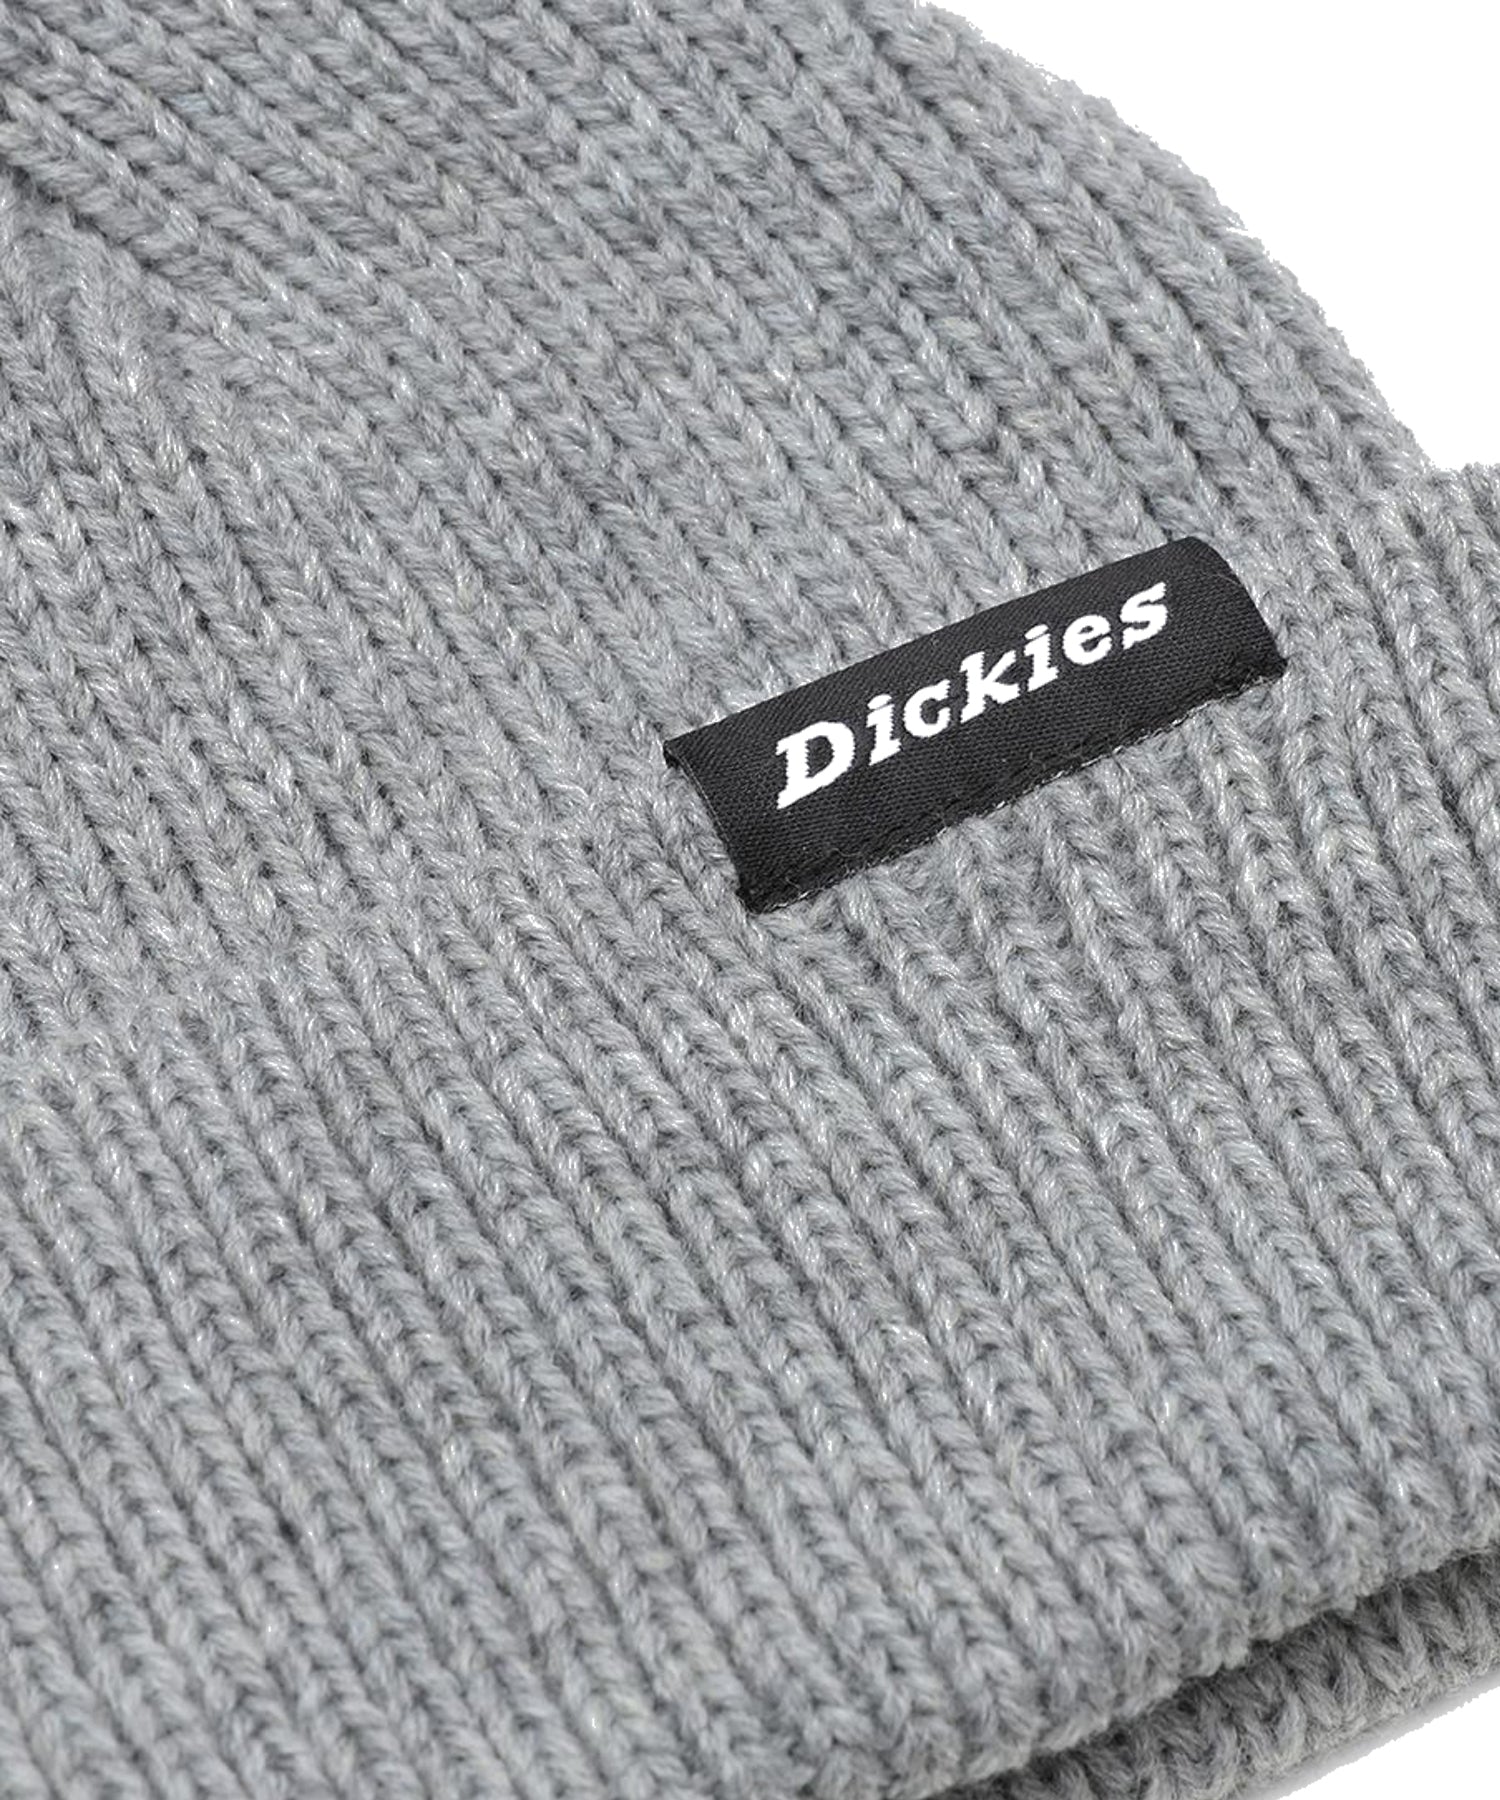 dickies-gorro-woddworth-gris-clásico gorro de lana -de color gris-100 % acrílico Fit Recto-logo de Dickies en el pliegue